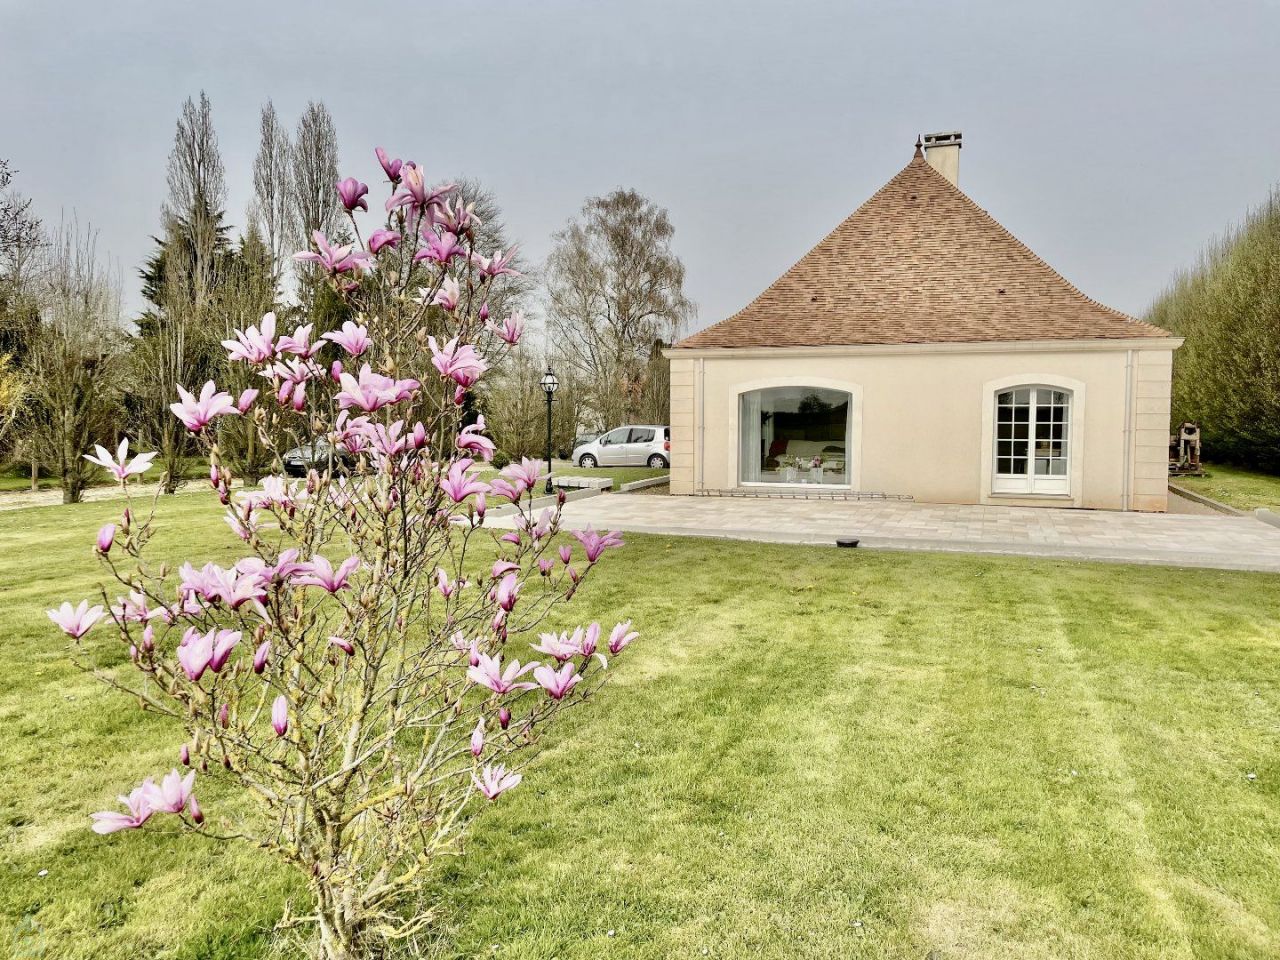 Maison à Pacy-sur-Eure, France - image 1